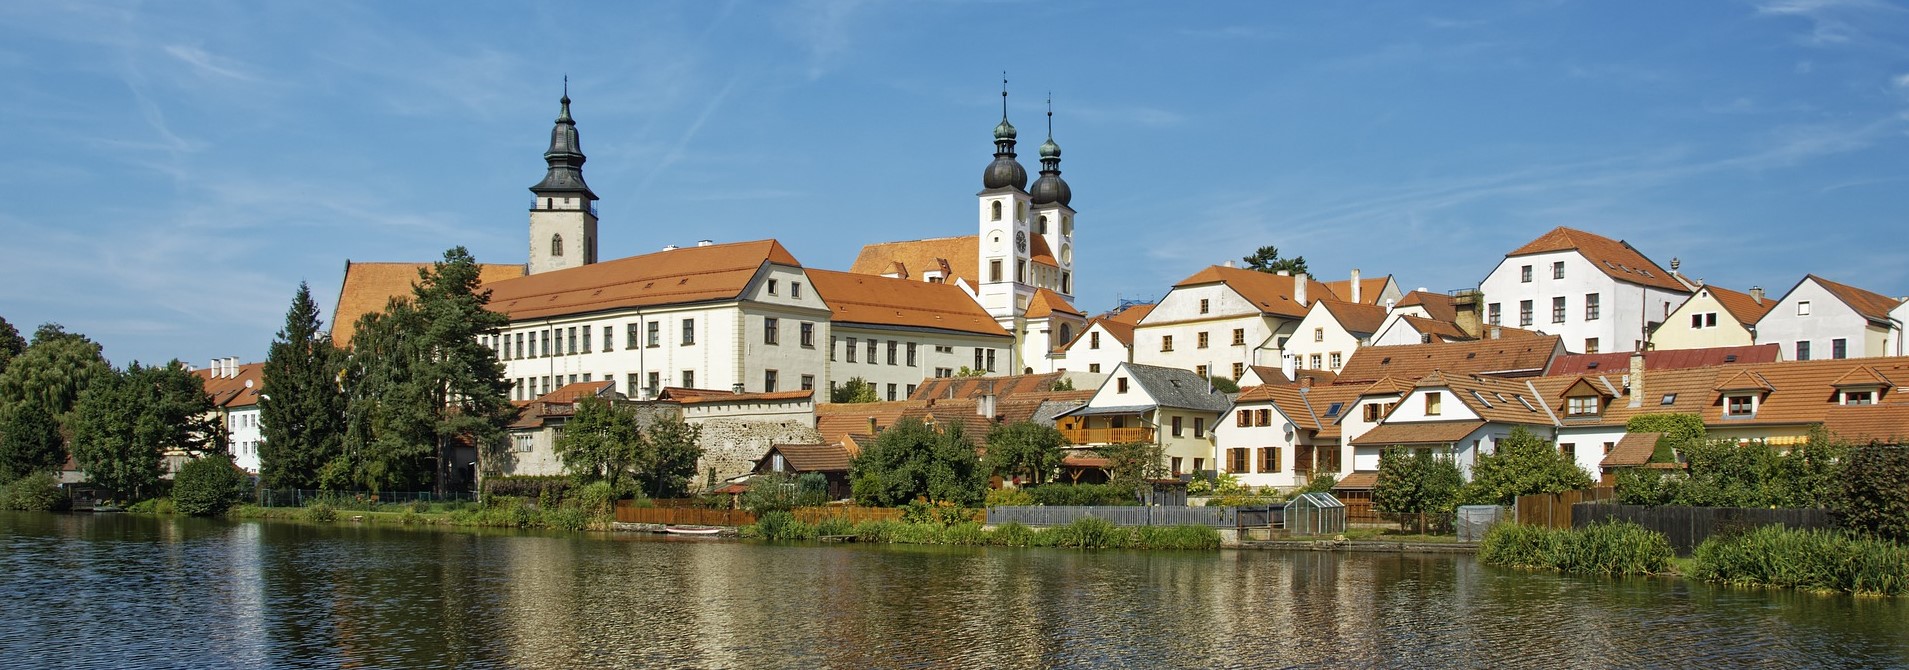 Stadt in Tschechien